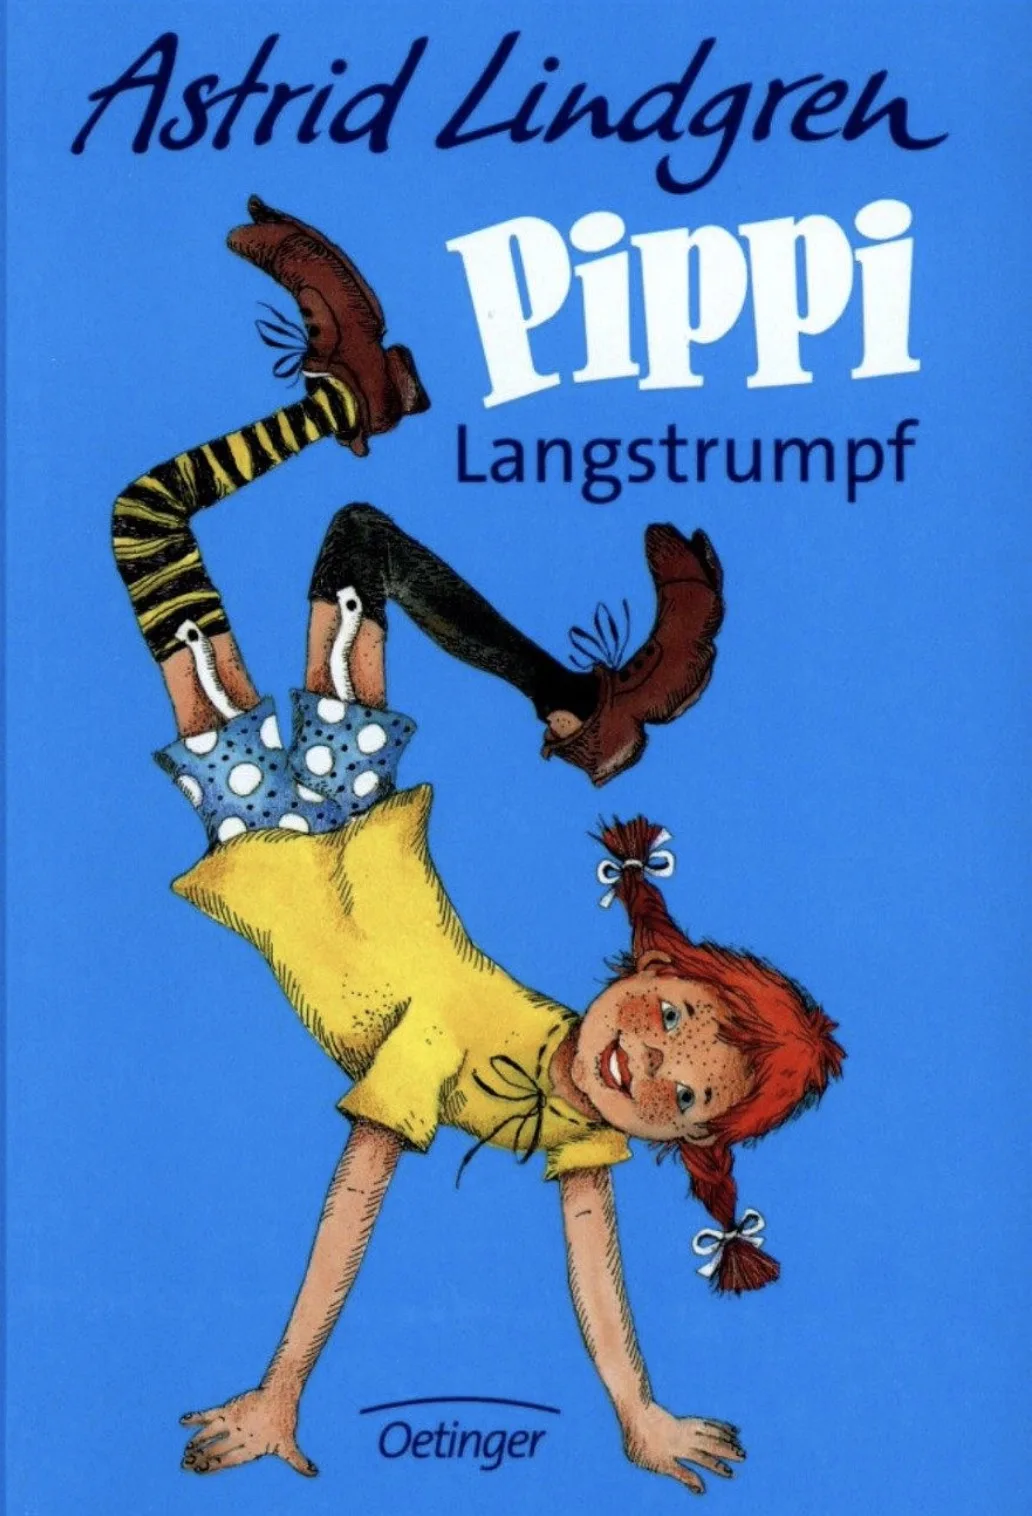 Pippi Longstocking Langstrumpf Comics мультяшный декоративный постер настенный холст стикер нежный дом дети украшение комнаты подарок - Цвет: Многоцветный